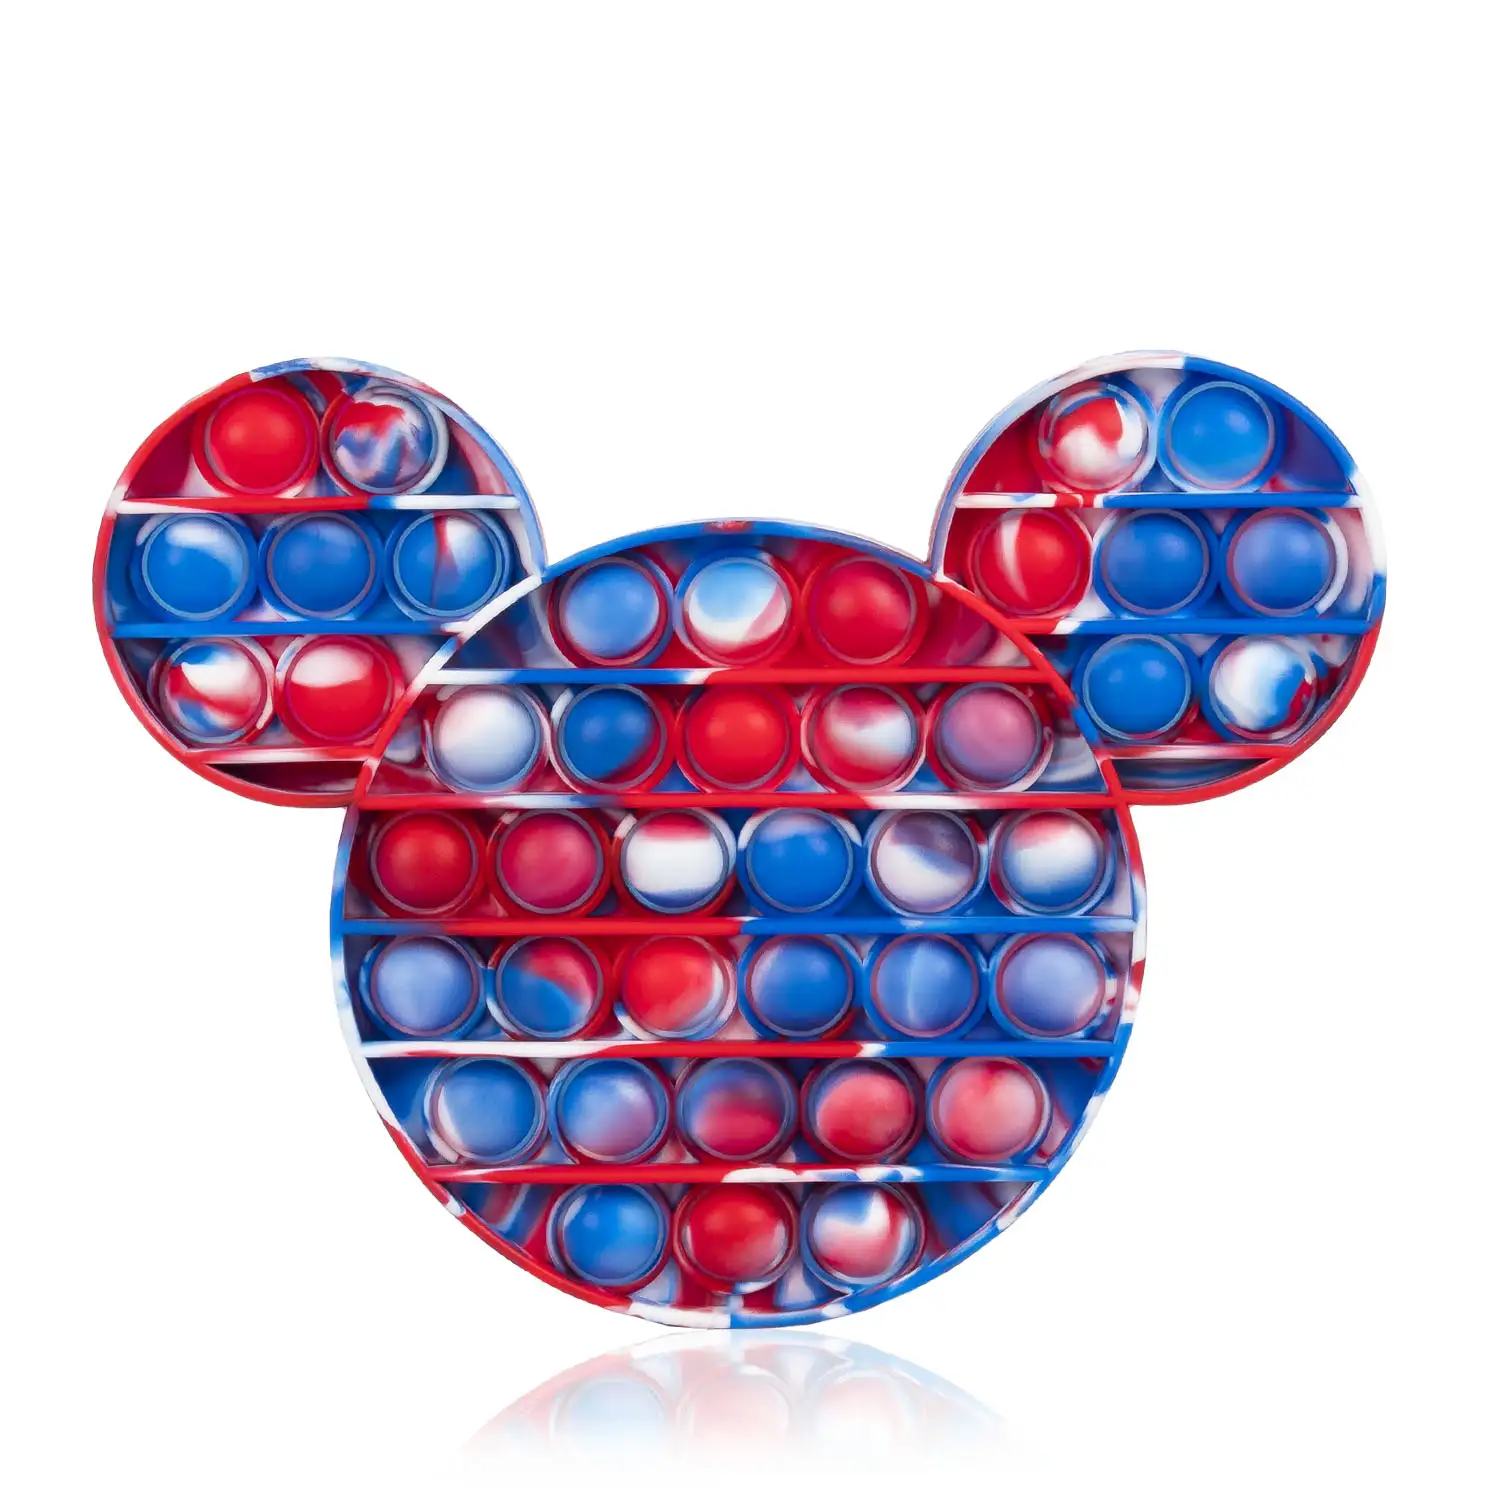 Bubble Pop It juguete sensitivo desestresante, burbujas de silicona para apretar y pulsar. Diseño ratoncito multicolor.